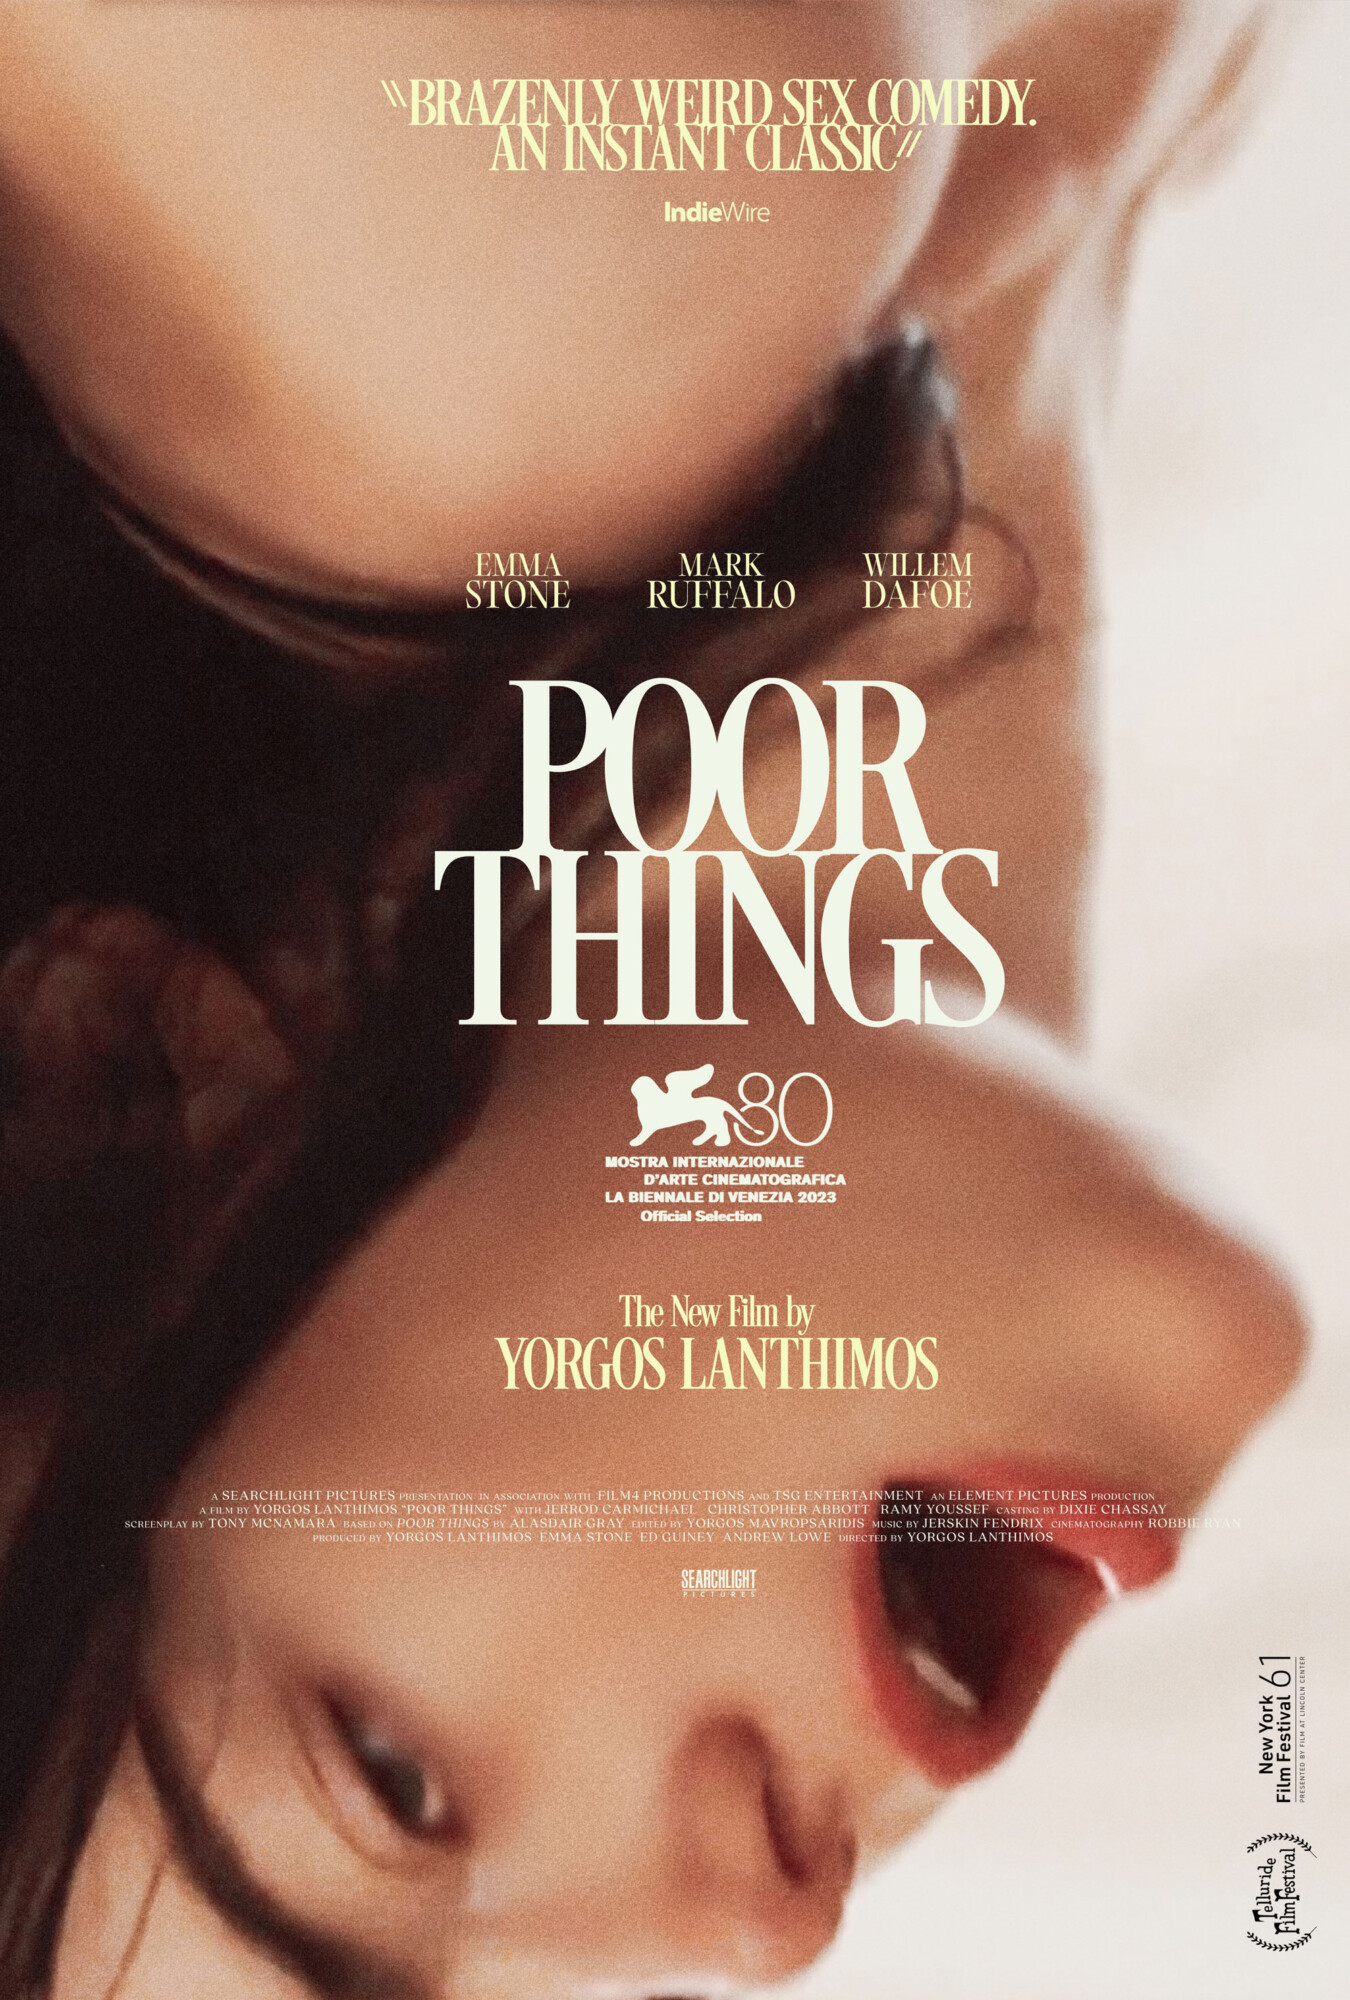 “Poor Things” Poster Series By Aleks Phoenix (1-3)